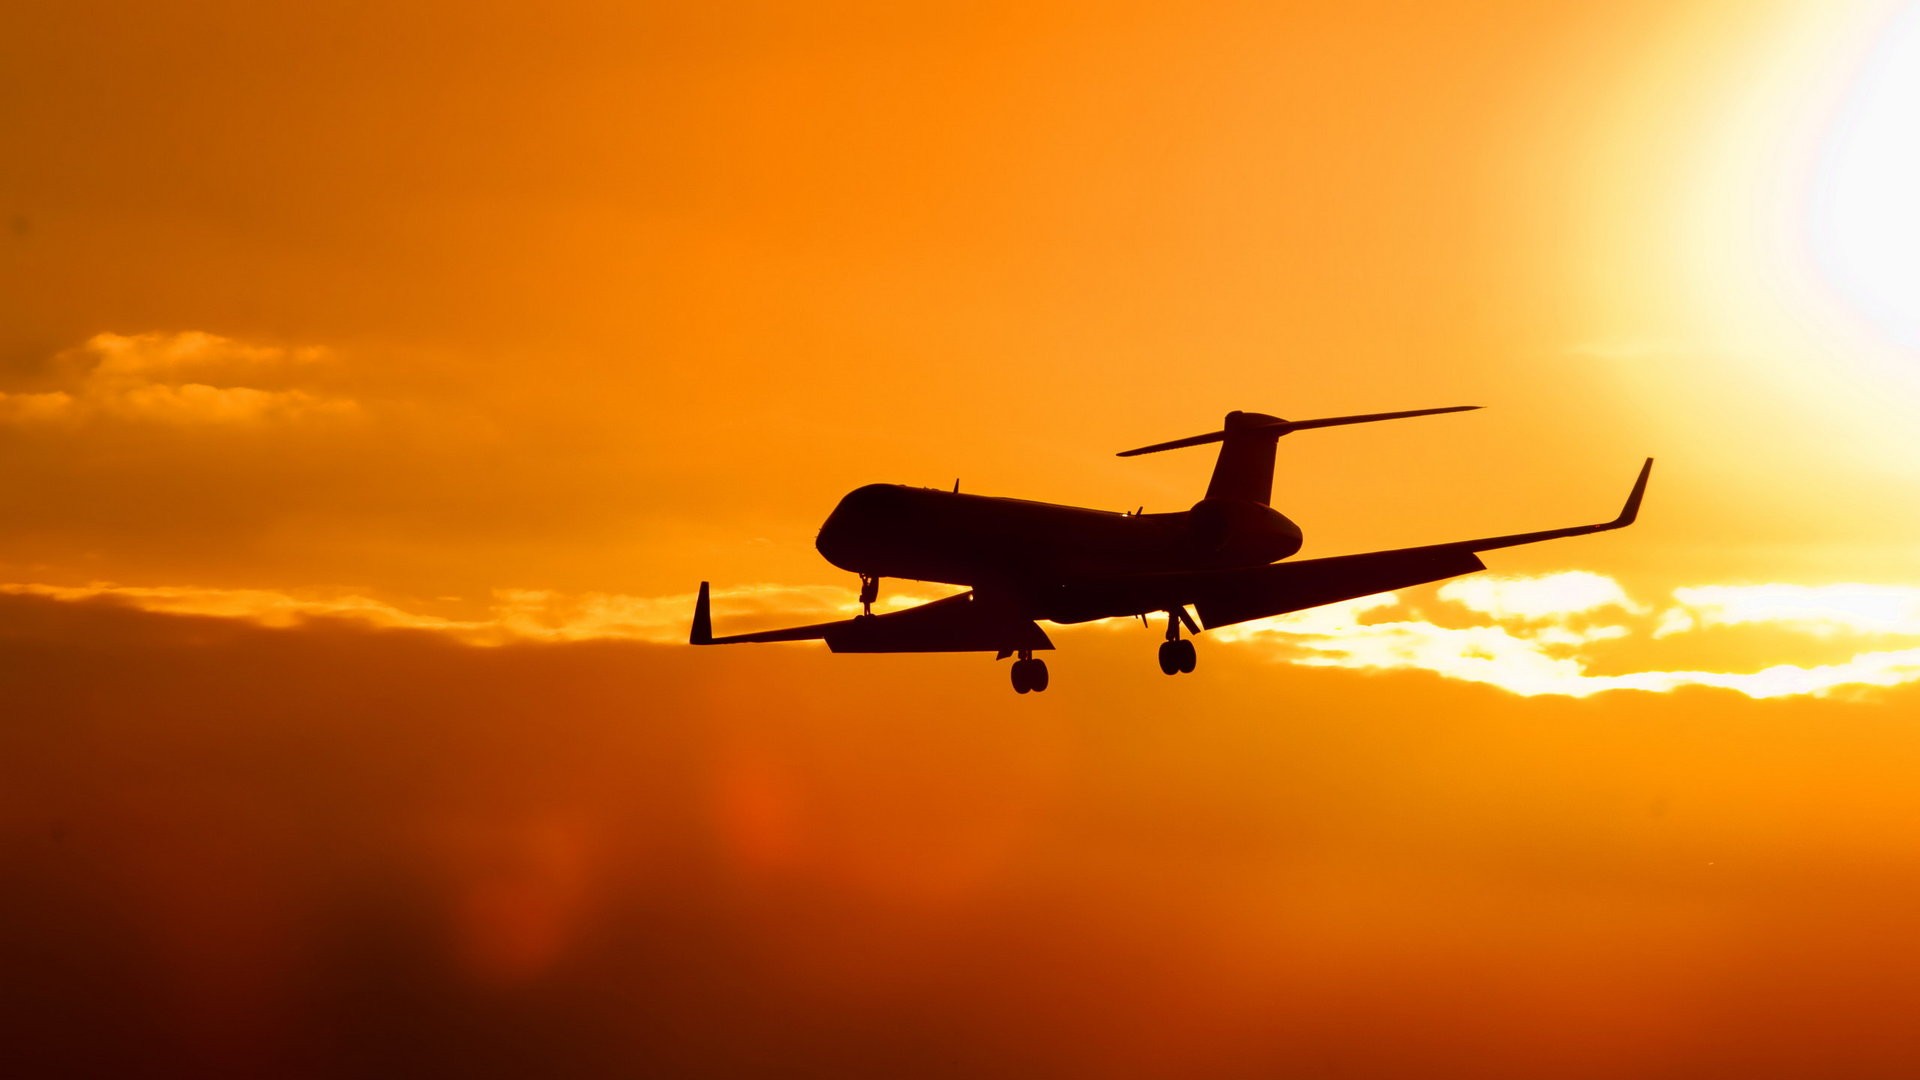 sunset, Clouds, Sun, Aircraft, Aviation, Sillhouette, Crj 700, Bombardier Wallpaper